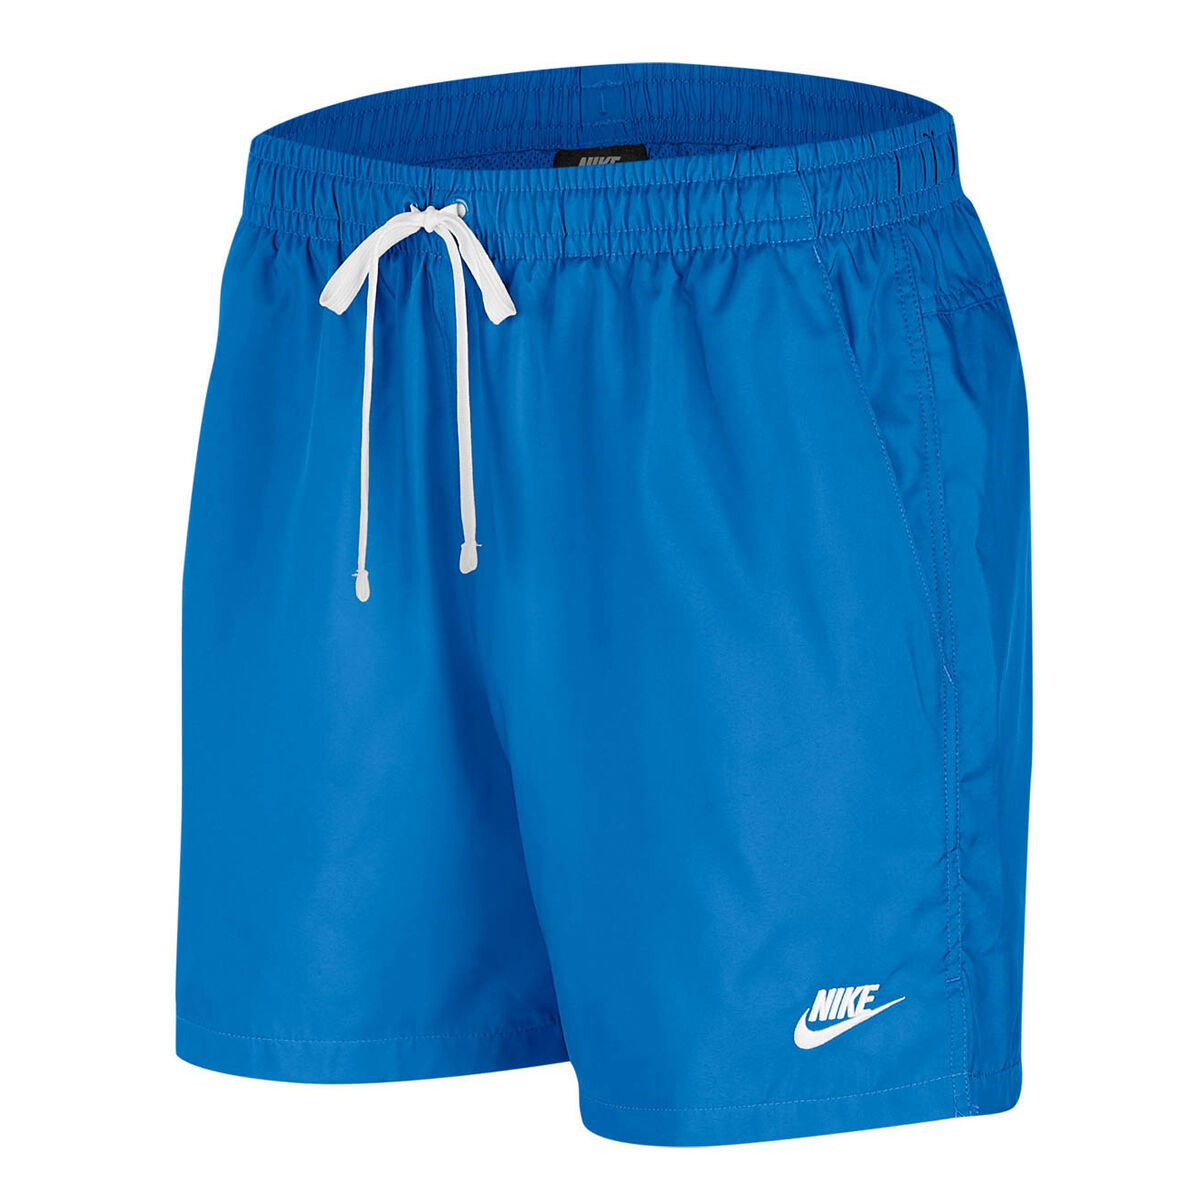 nike flow shorts blue